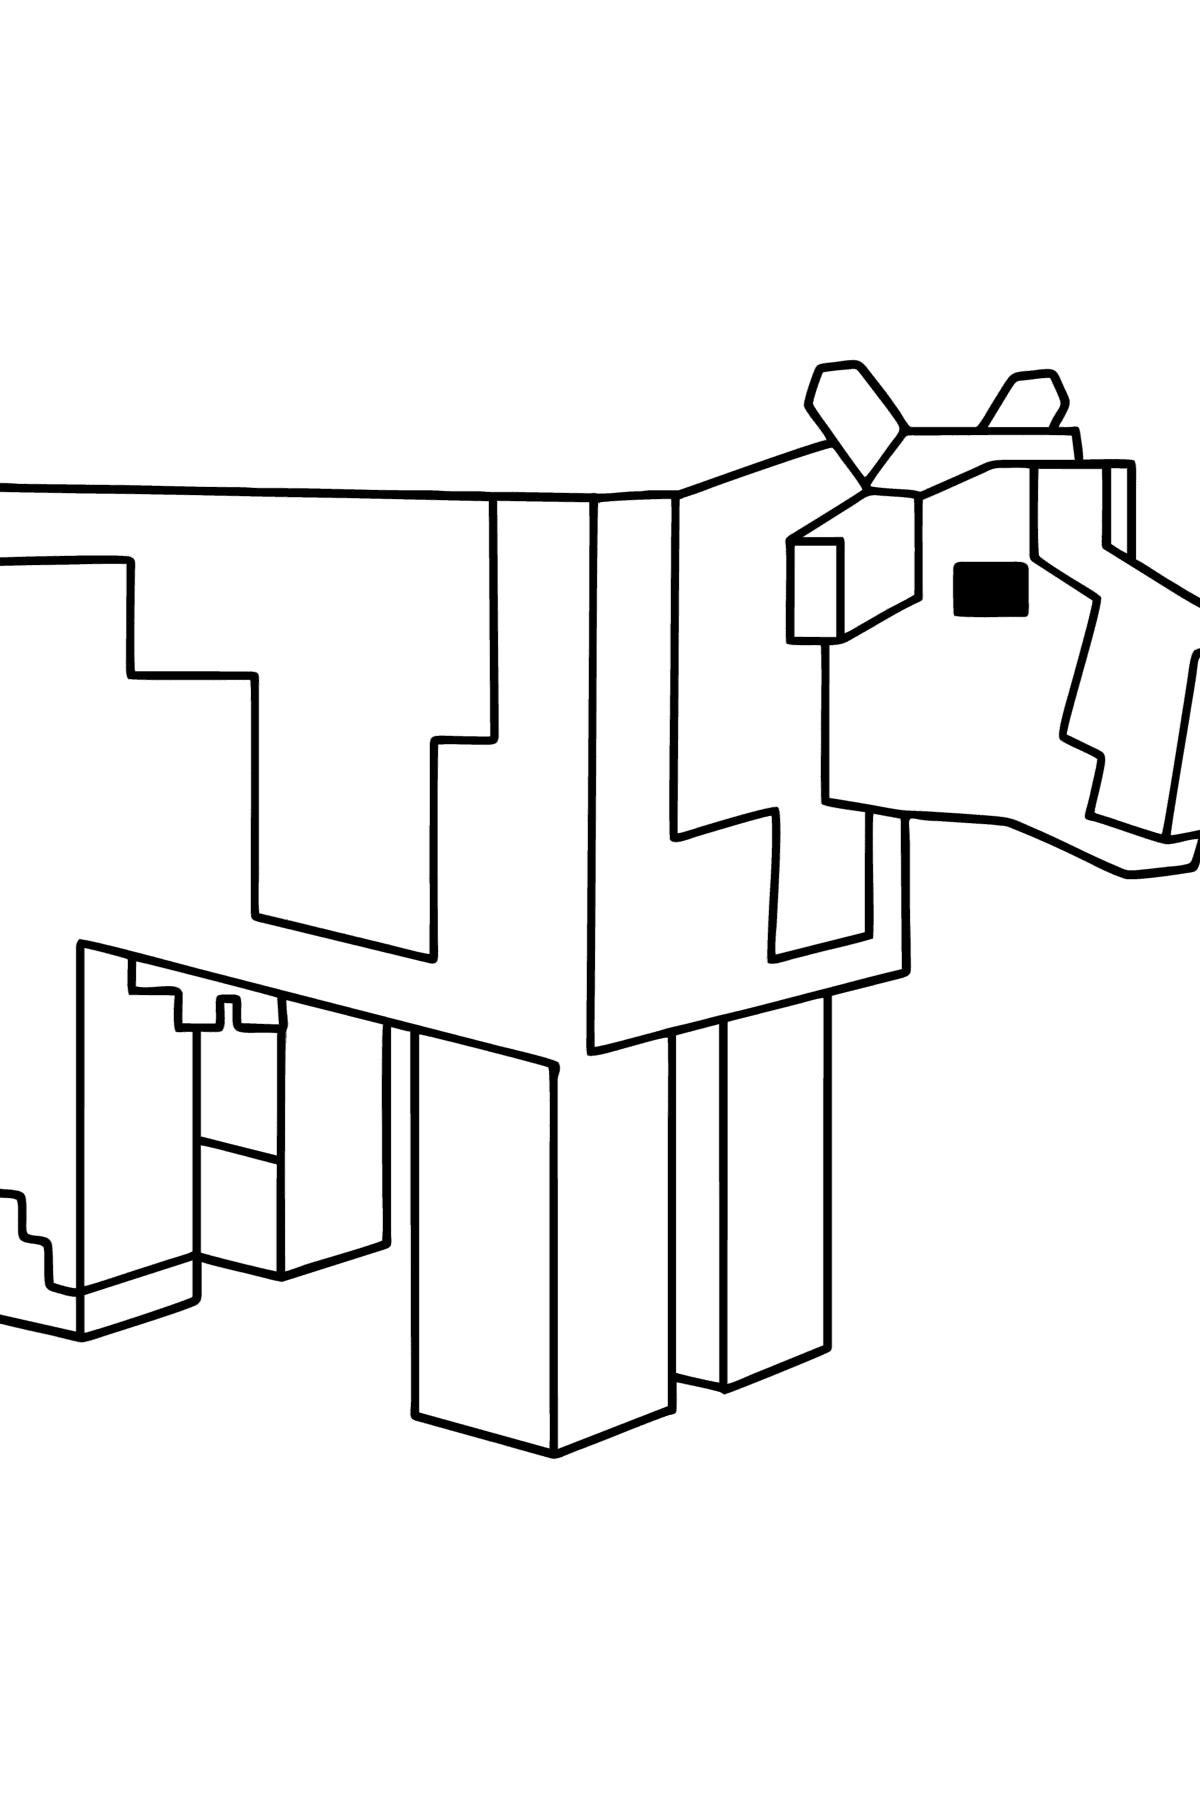 Coloriage Minecraft Cow - Coloriages pour les Enfants